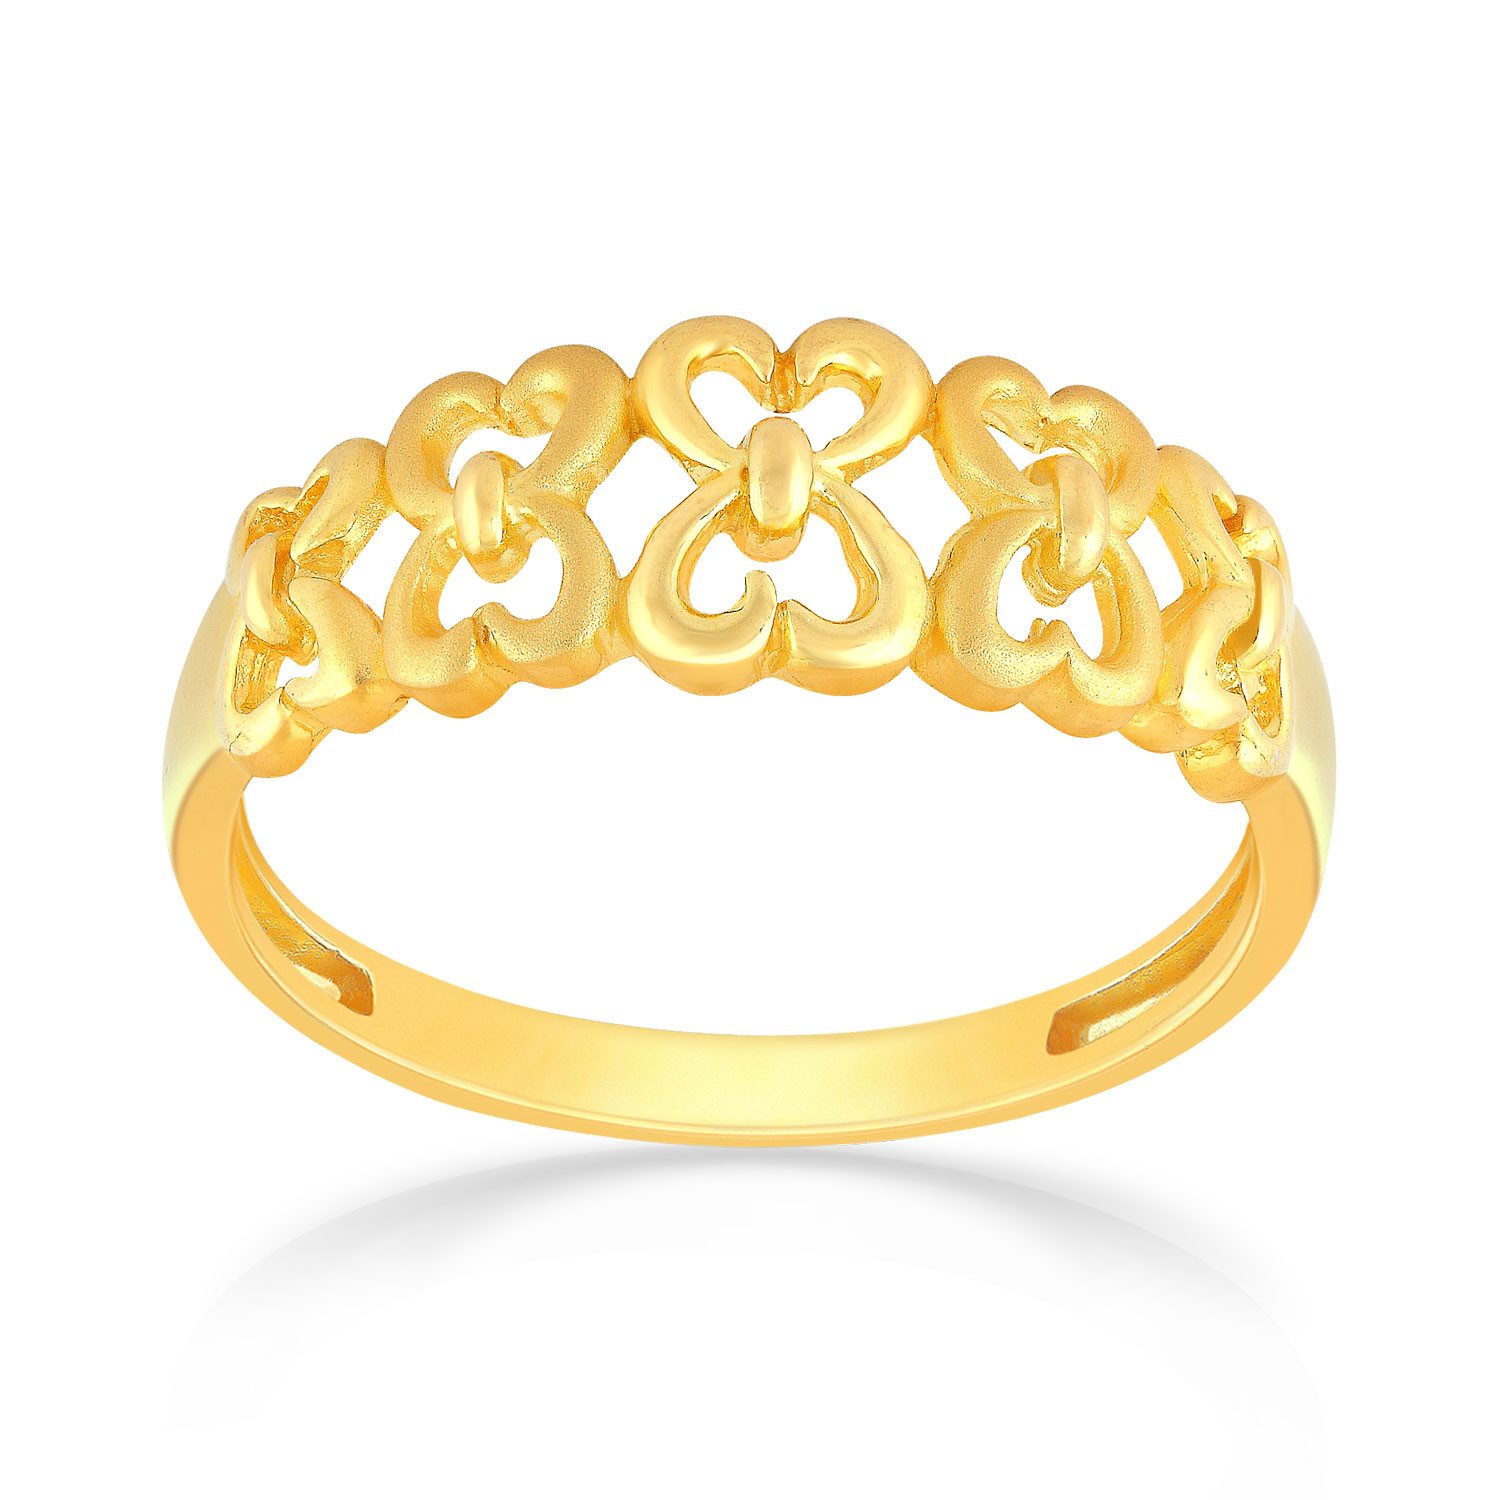 Buy Malabar Gold Ring MHAAAAAAEOOS for Women Online | Malabar Gold ...